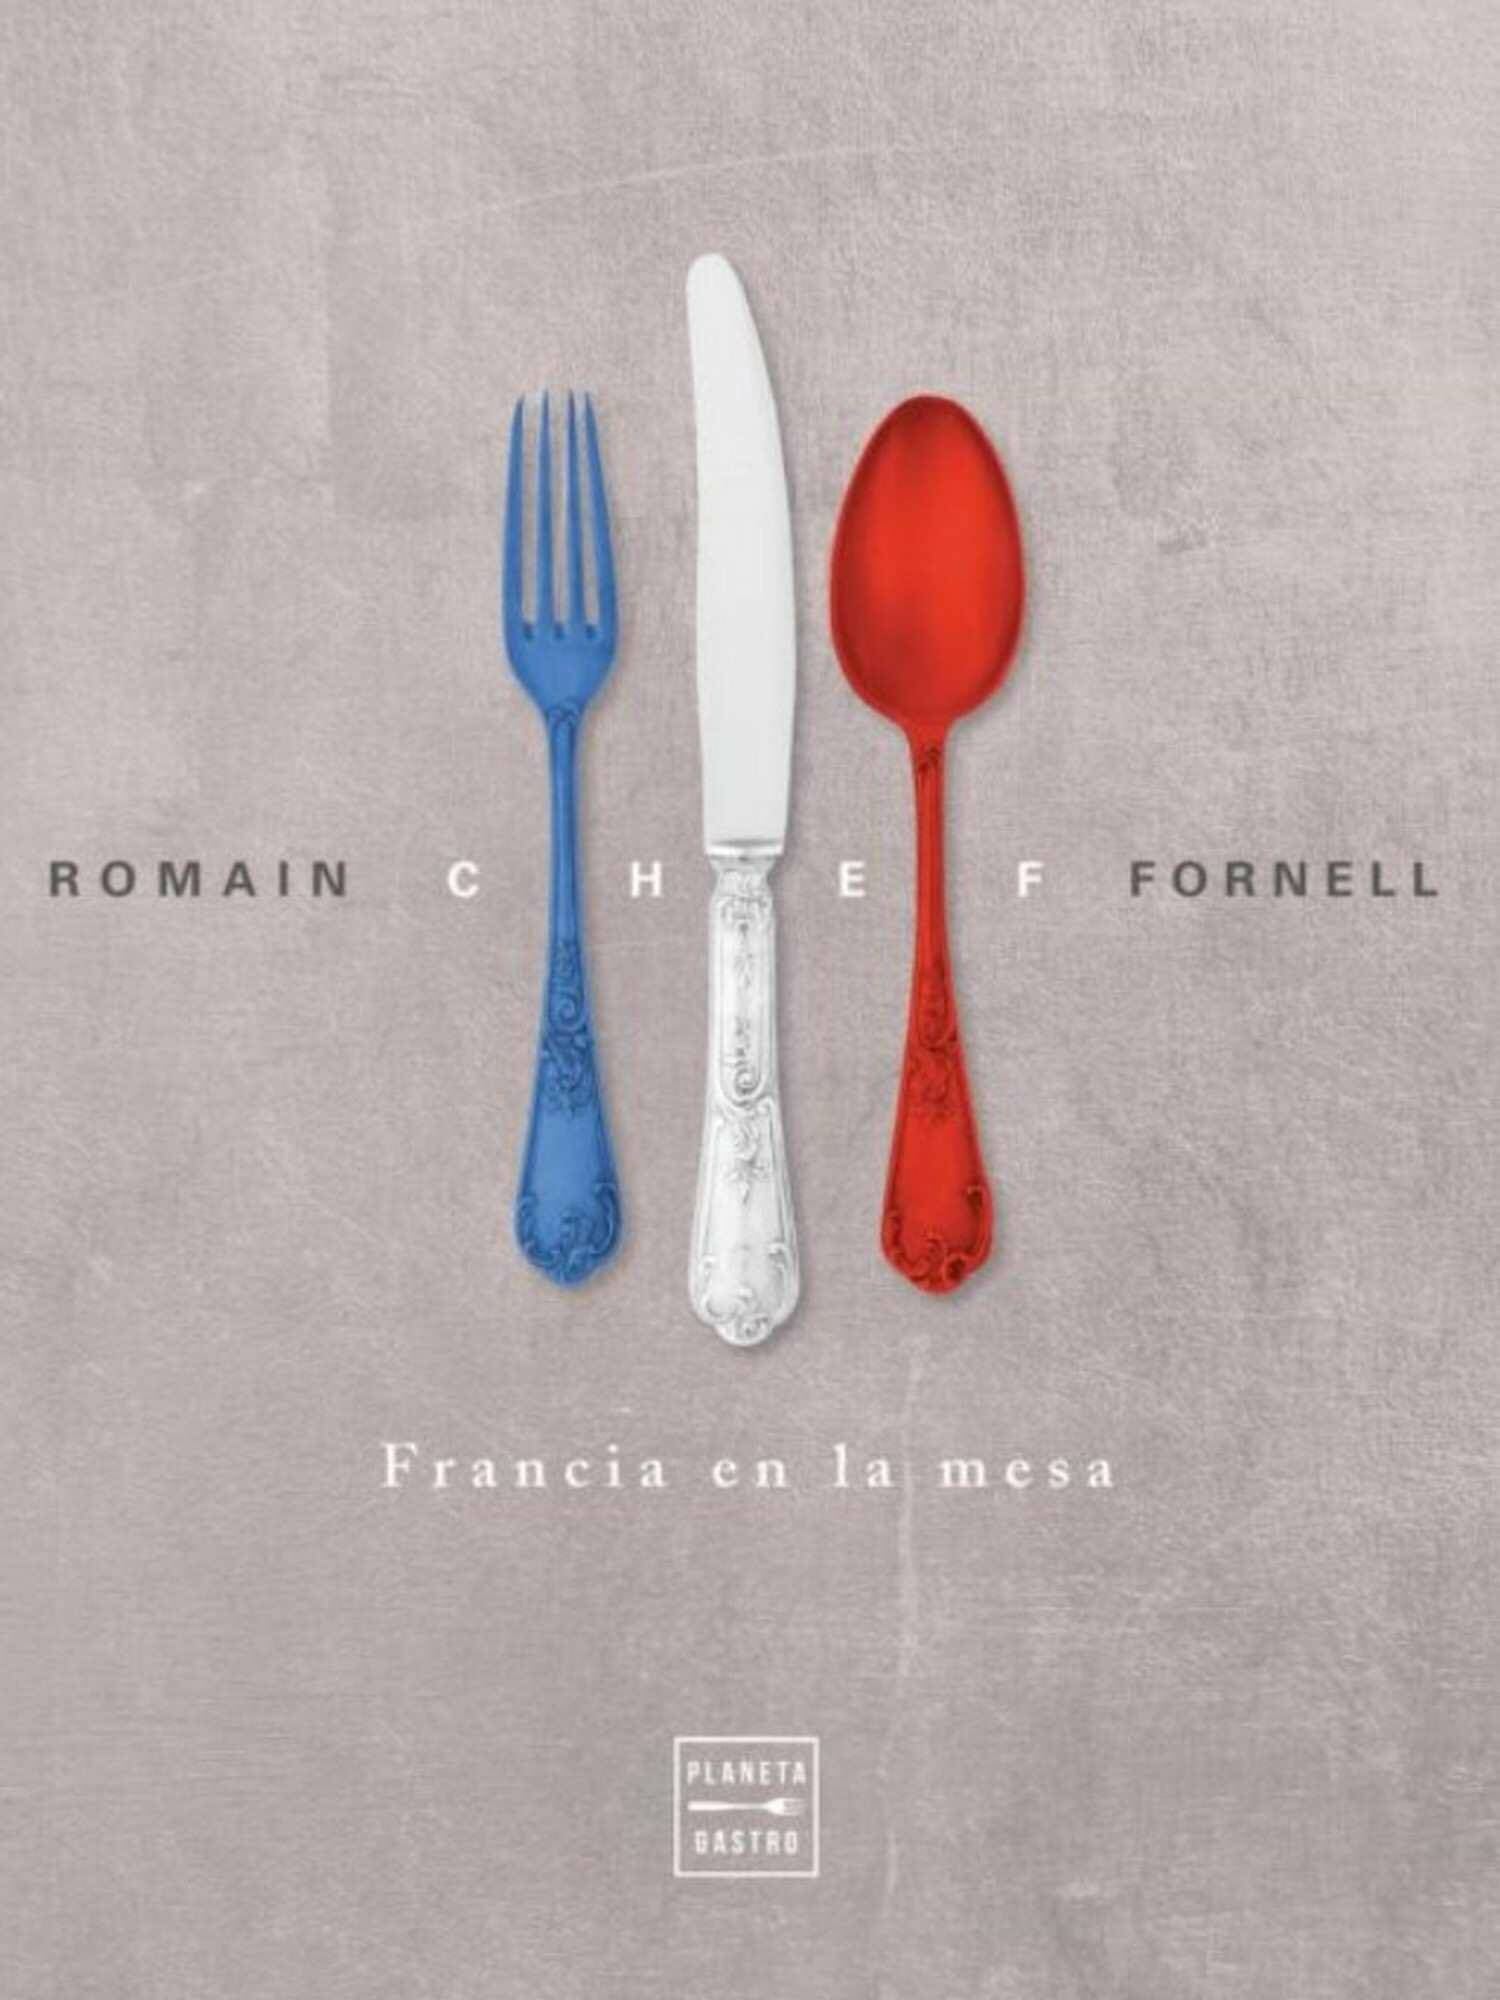 Chef, de Romain Fornell